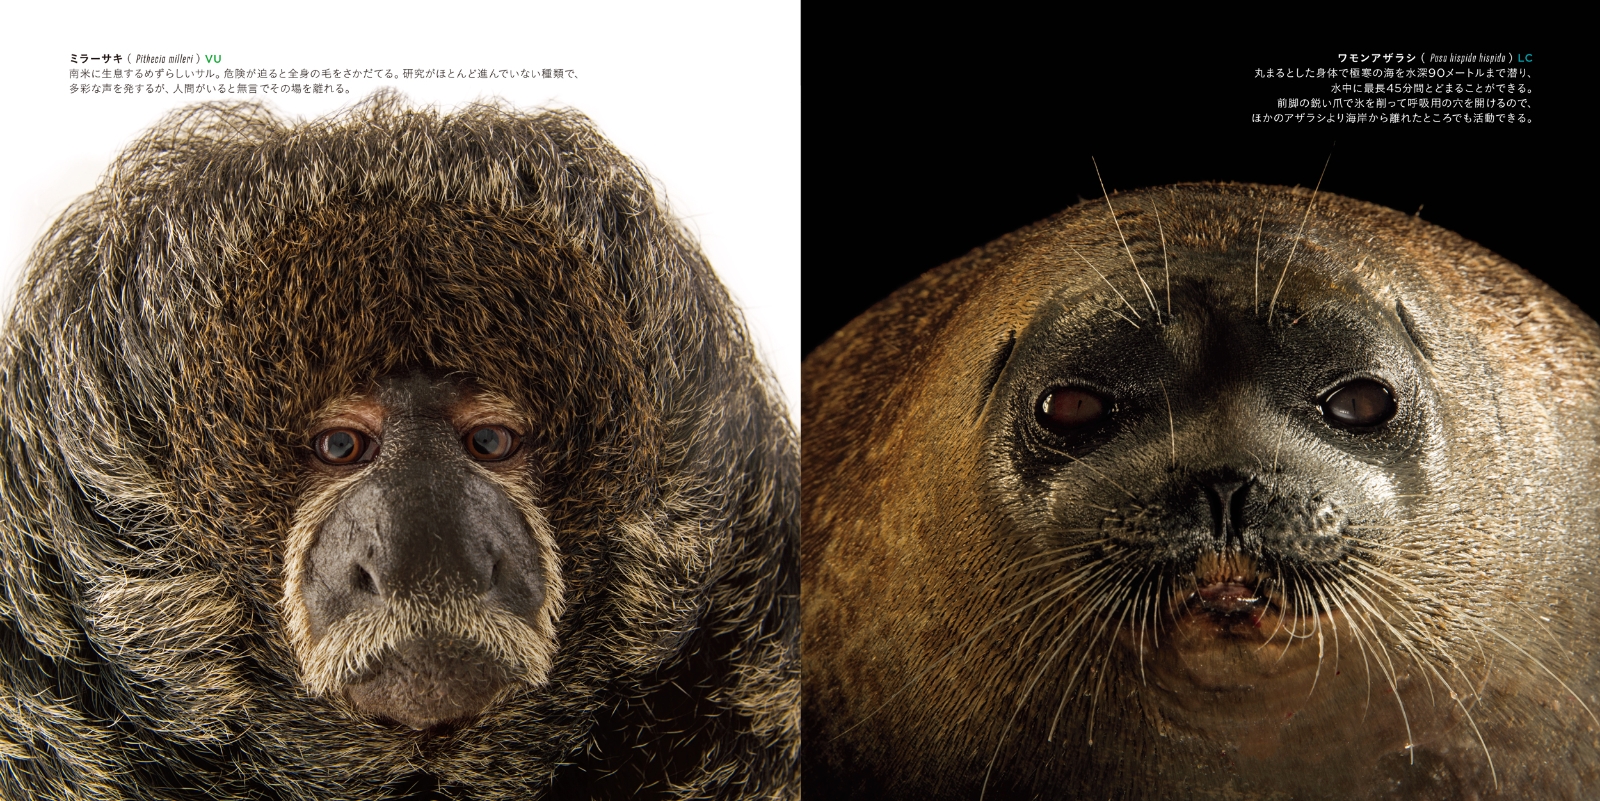 楽天ブックス: PHOTO ARK 生命の賛歌 - 絶滅から動物を守る撮影